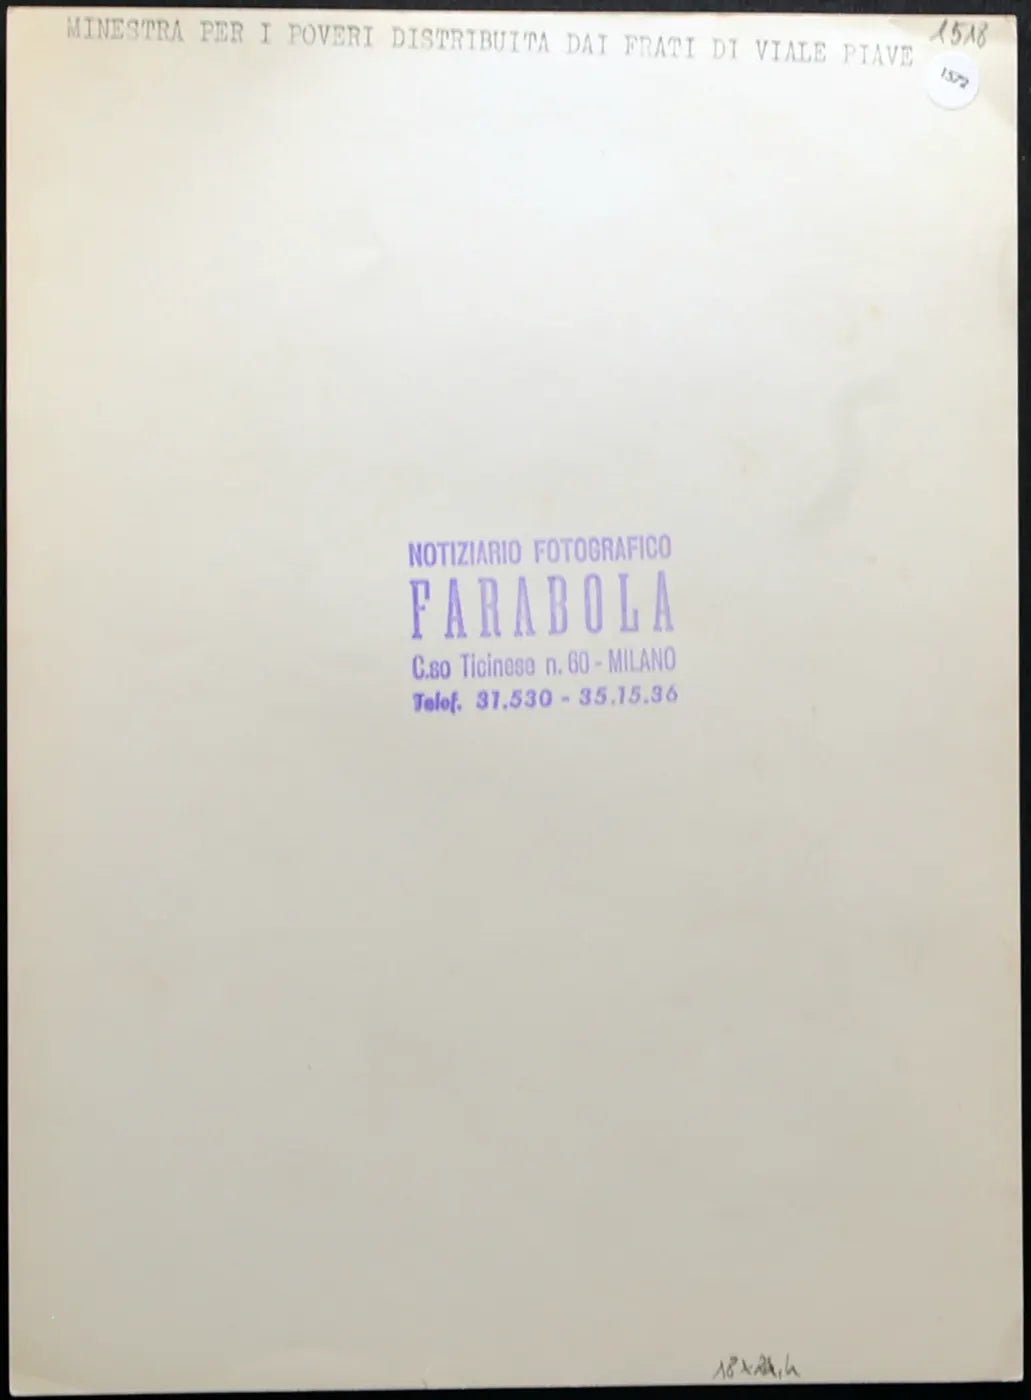 Minestra per i poveri Milano anni 50 Ft 1572 - Stampa 24x18 cm - Farabola Stampa ai sali d'argento